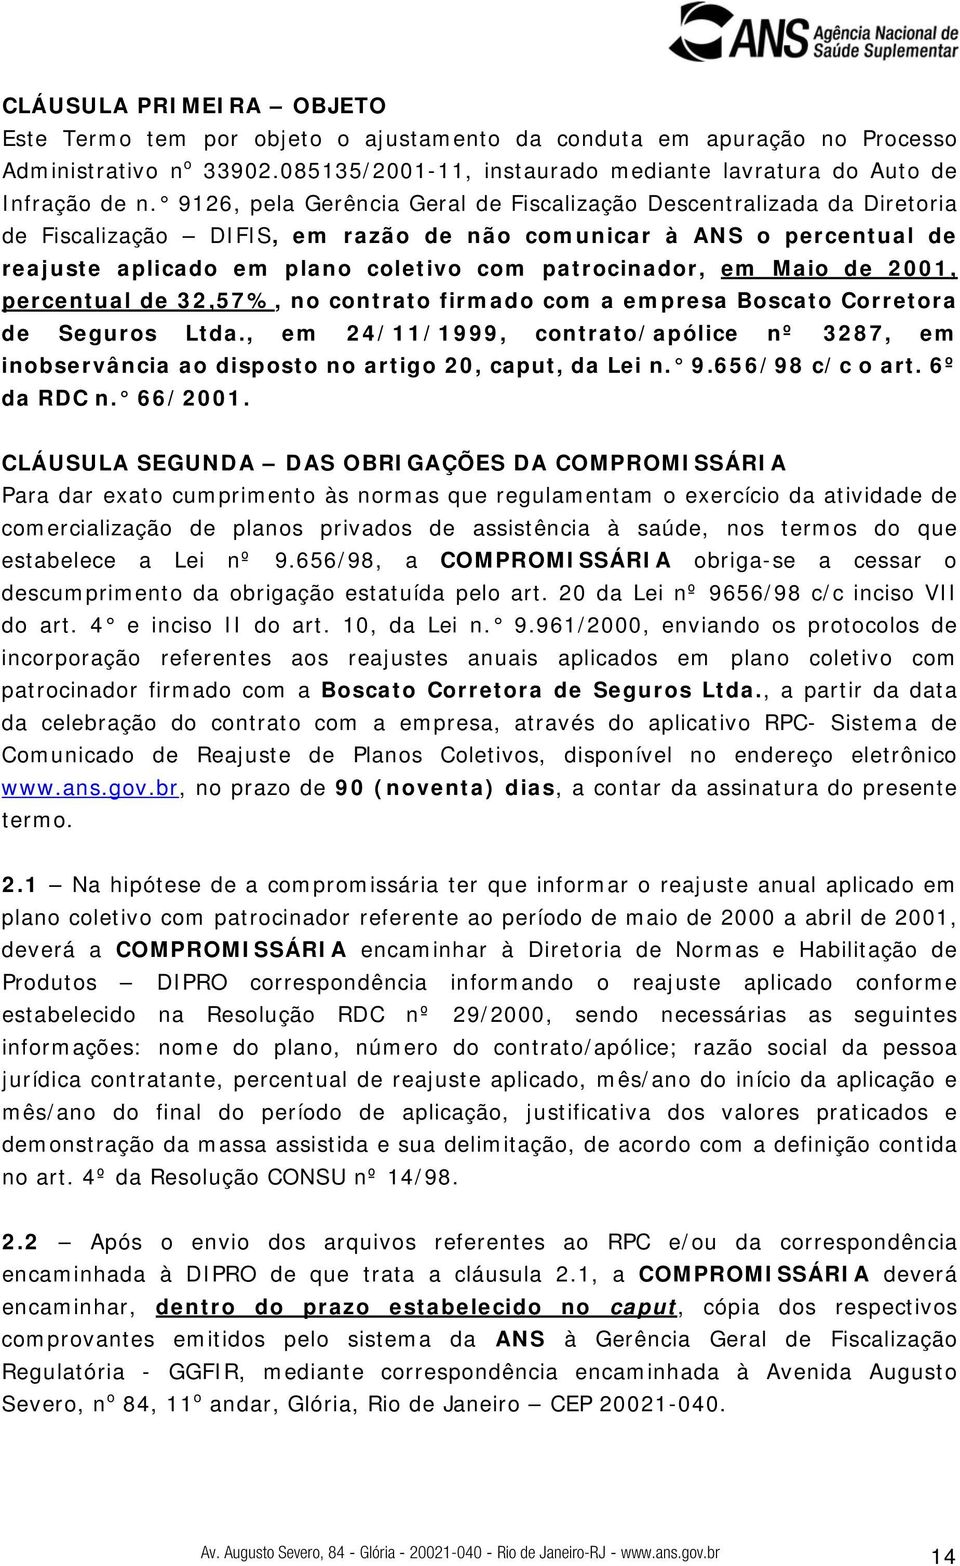 Maio de 2001, percentual de 32,57%, no contrato firmado com a empresa Boscato Corretora de Seguros Ltda.